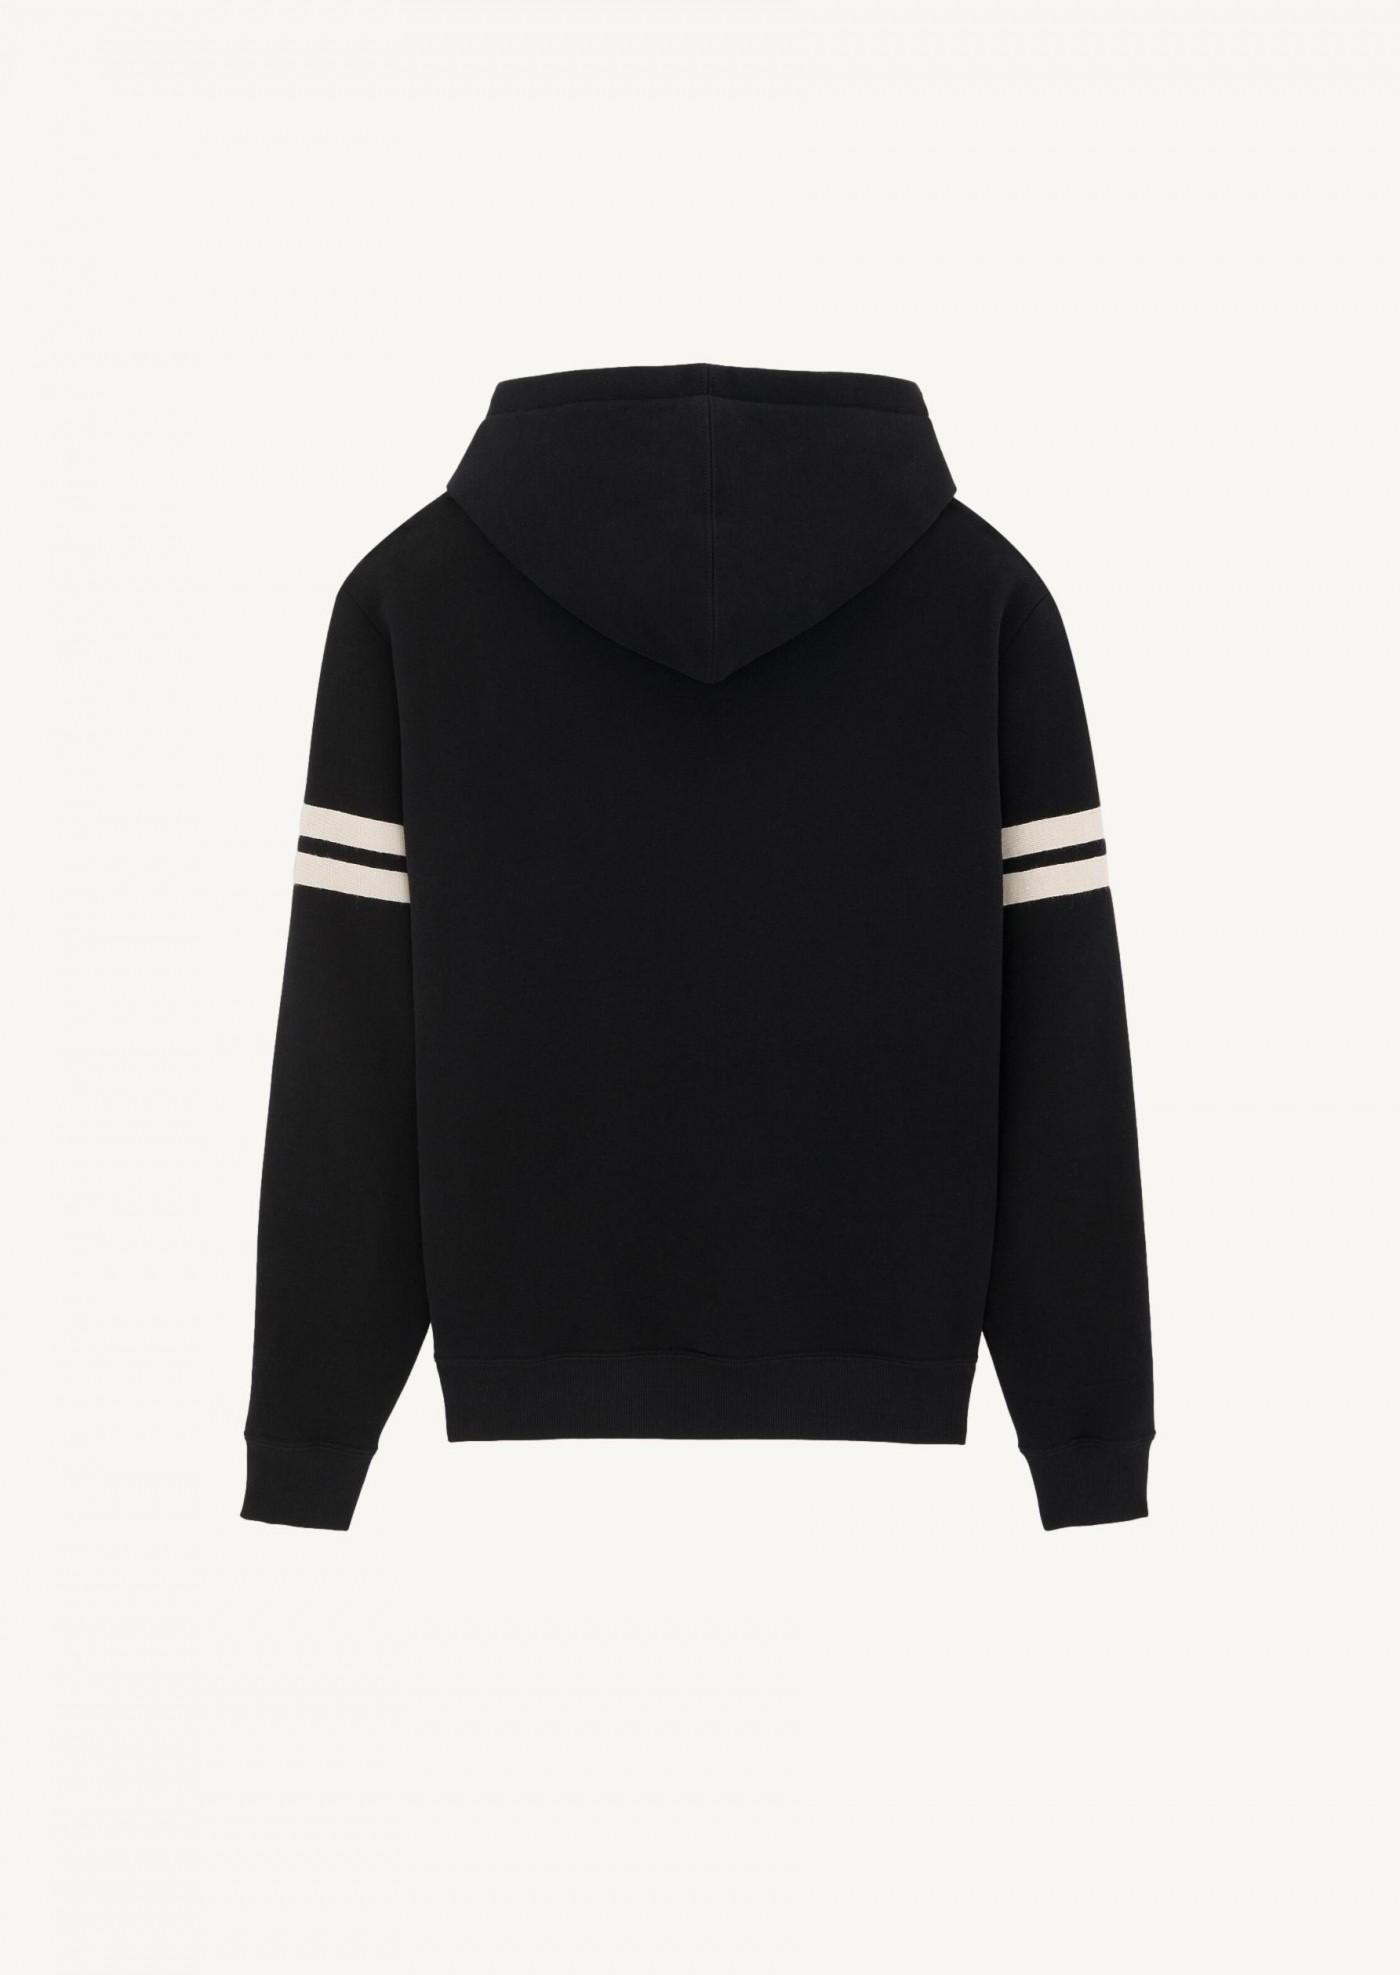 Saint Laurent embroidered hoodie